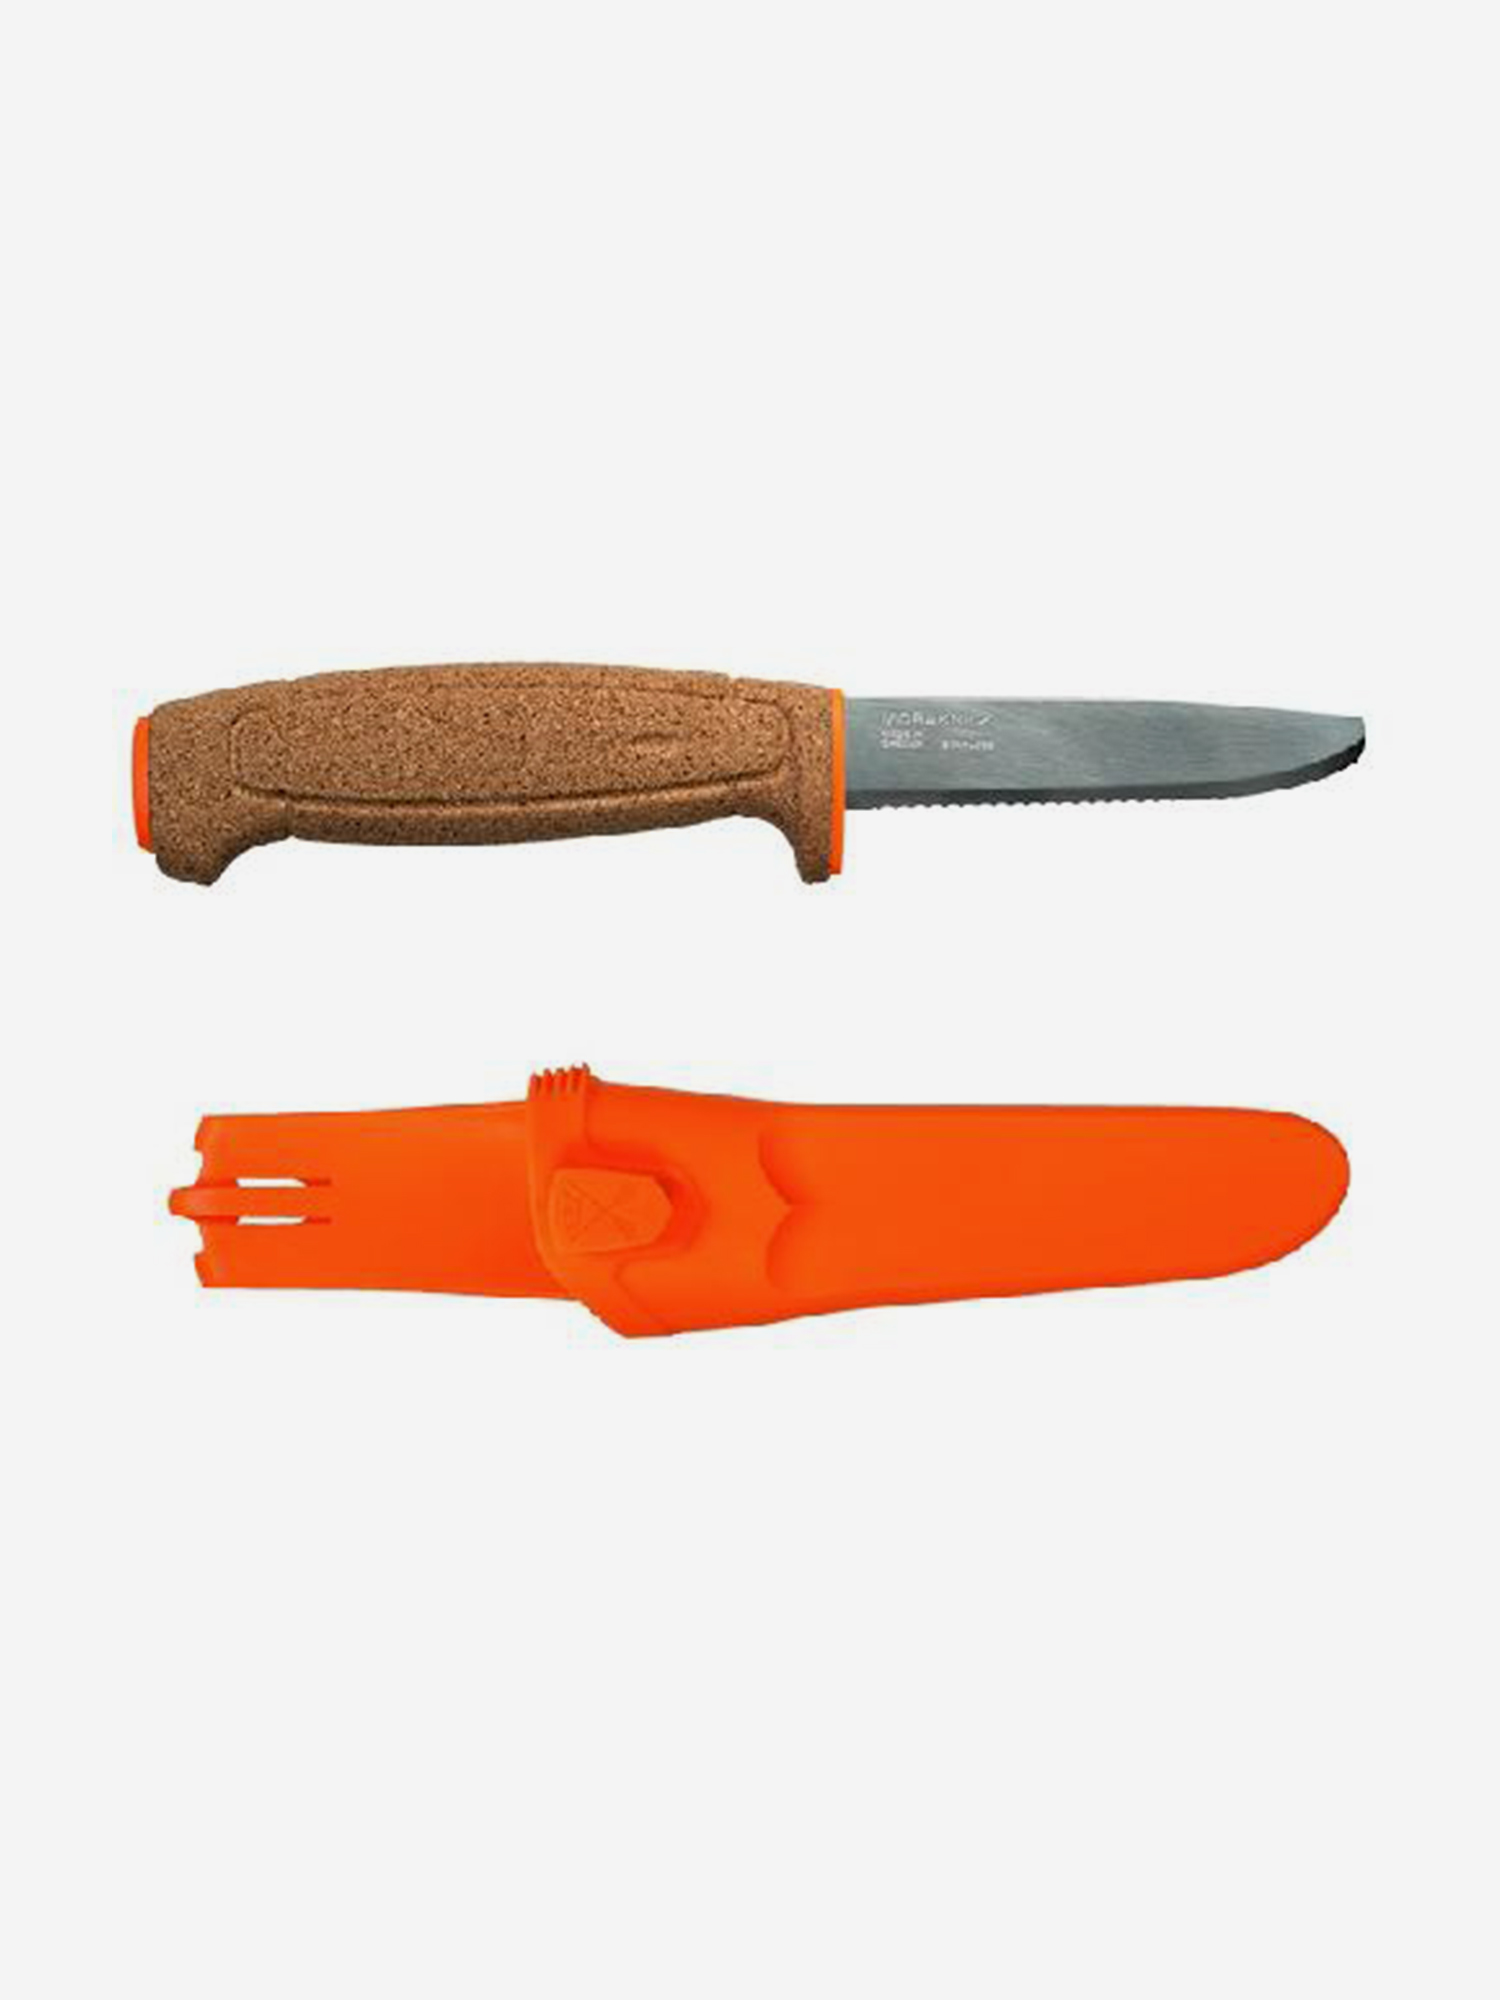 Нож Morakniv Floating Serrated Knife, нержавеющая сталь, пробковая ручка,, 13131, Оранжевый нож morakniv kansbol нержавеющая сталь прорезиненная ручка зеленый ножны 12634 зеленый